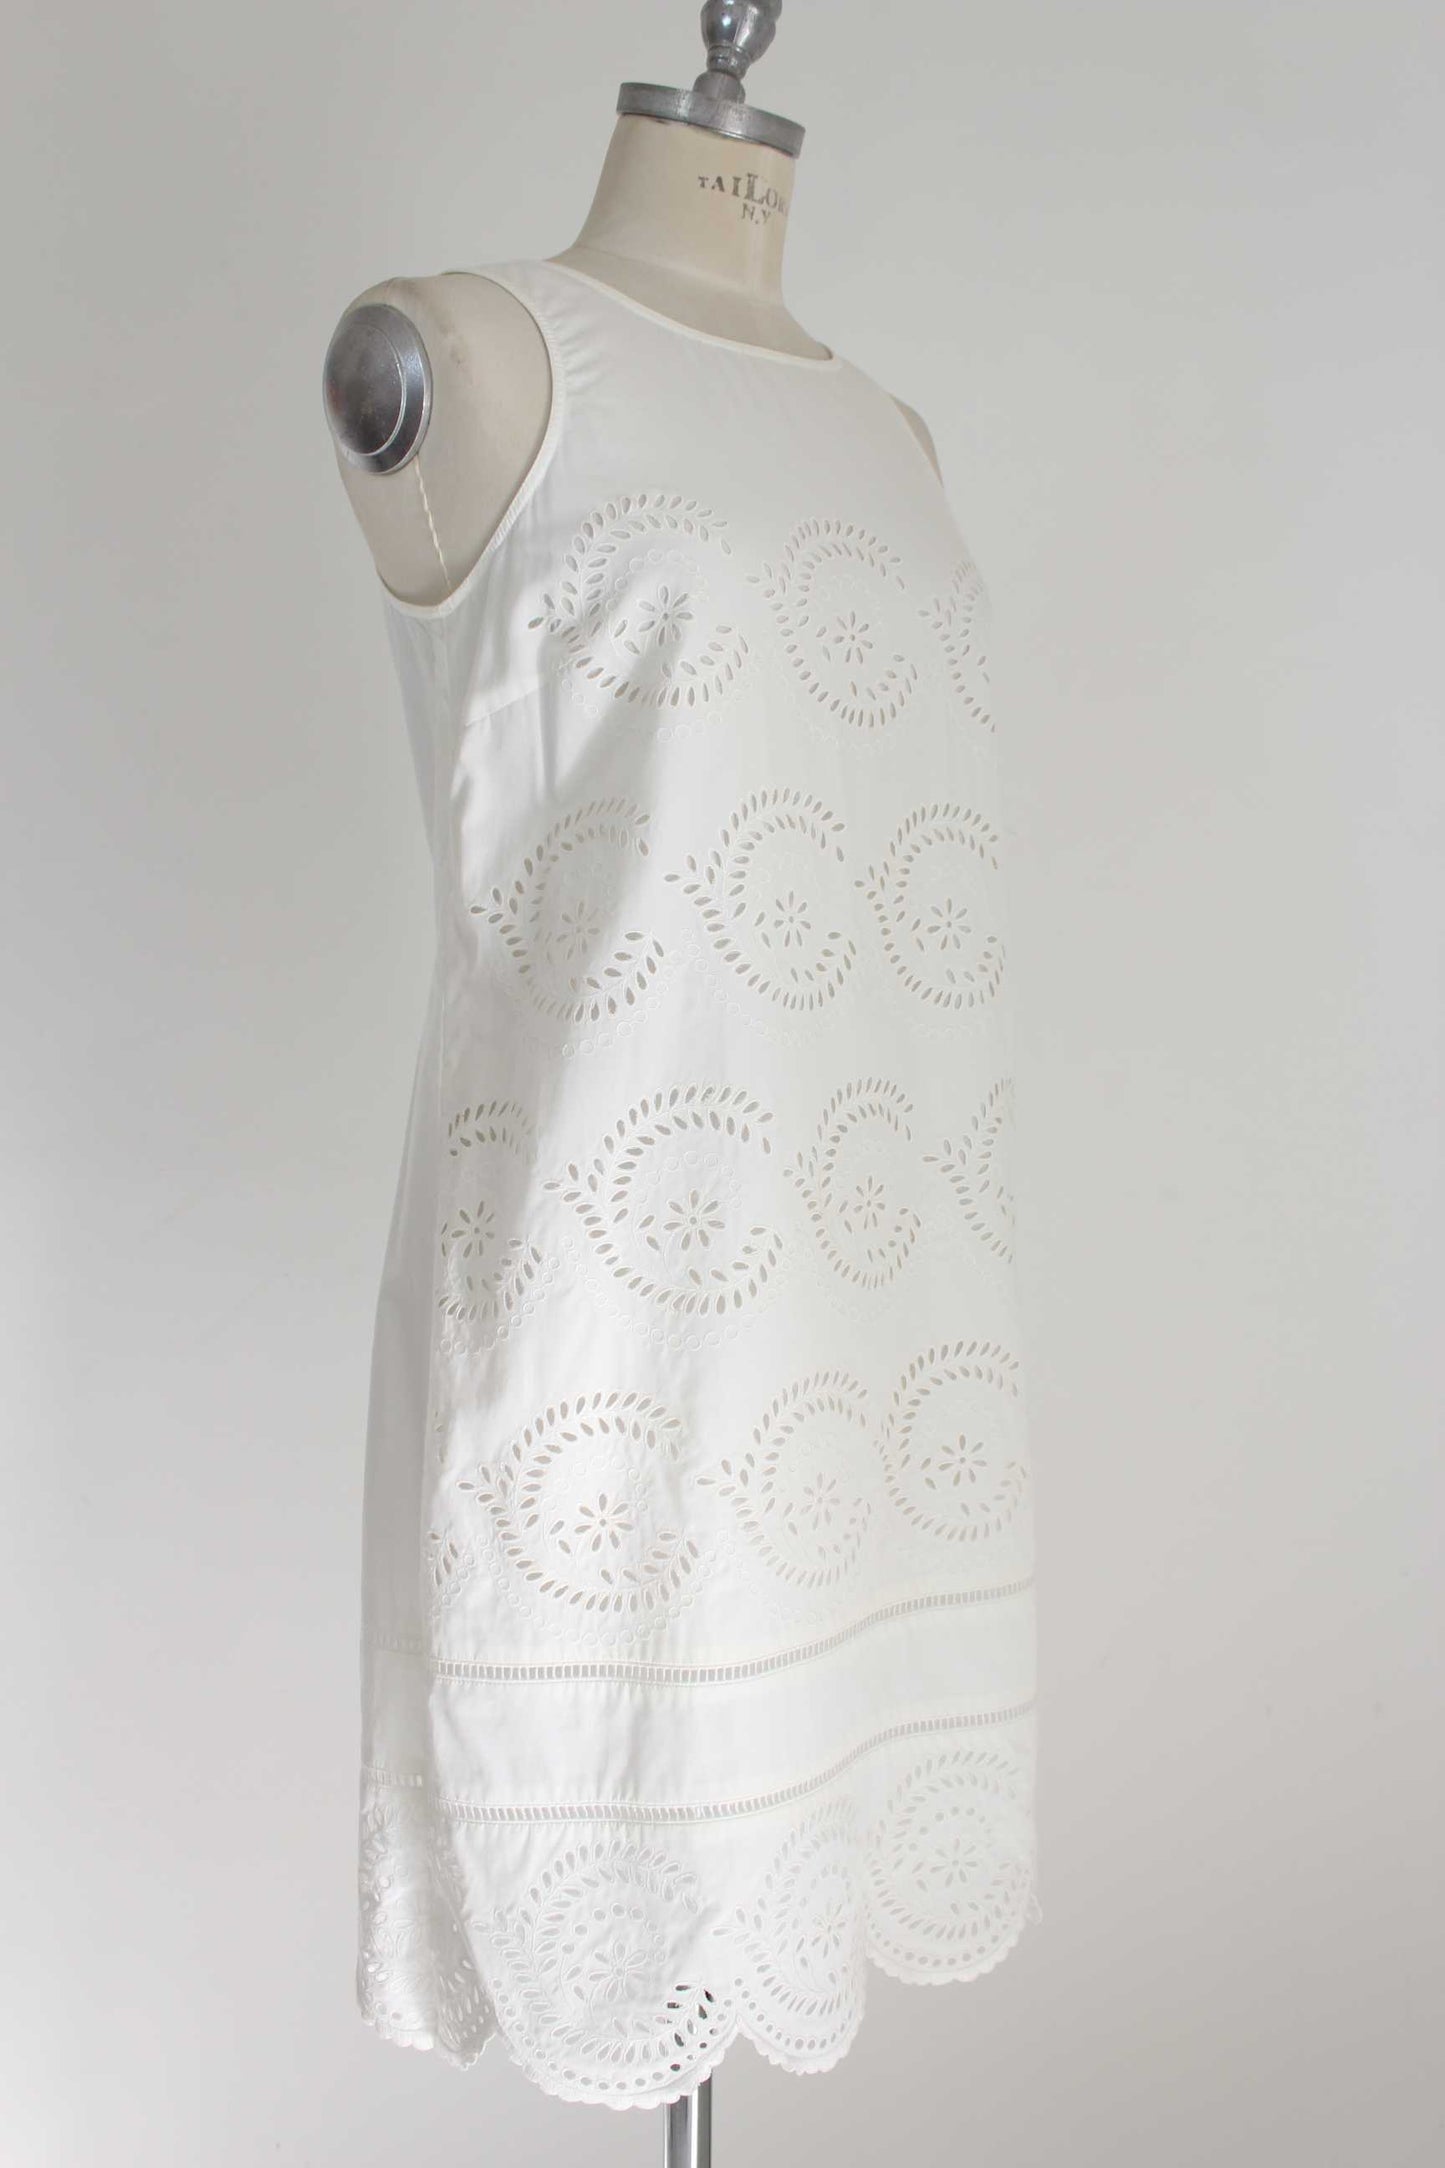 Marc Jacobs White Cotton Lace Dress